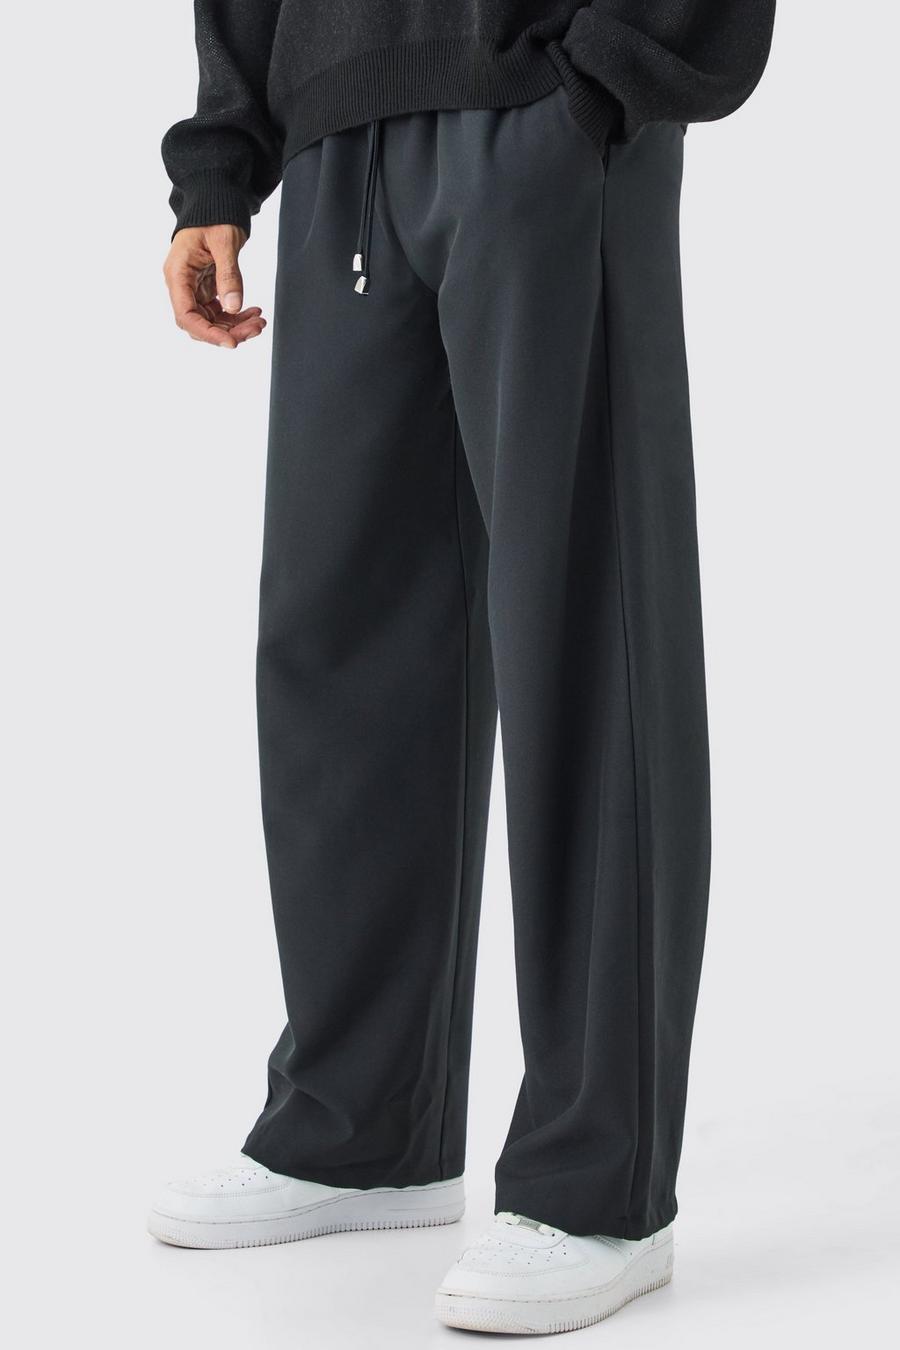 Oversized Suit Pants Black